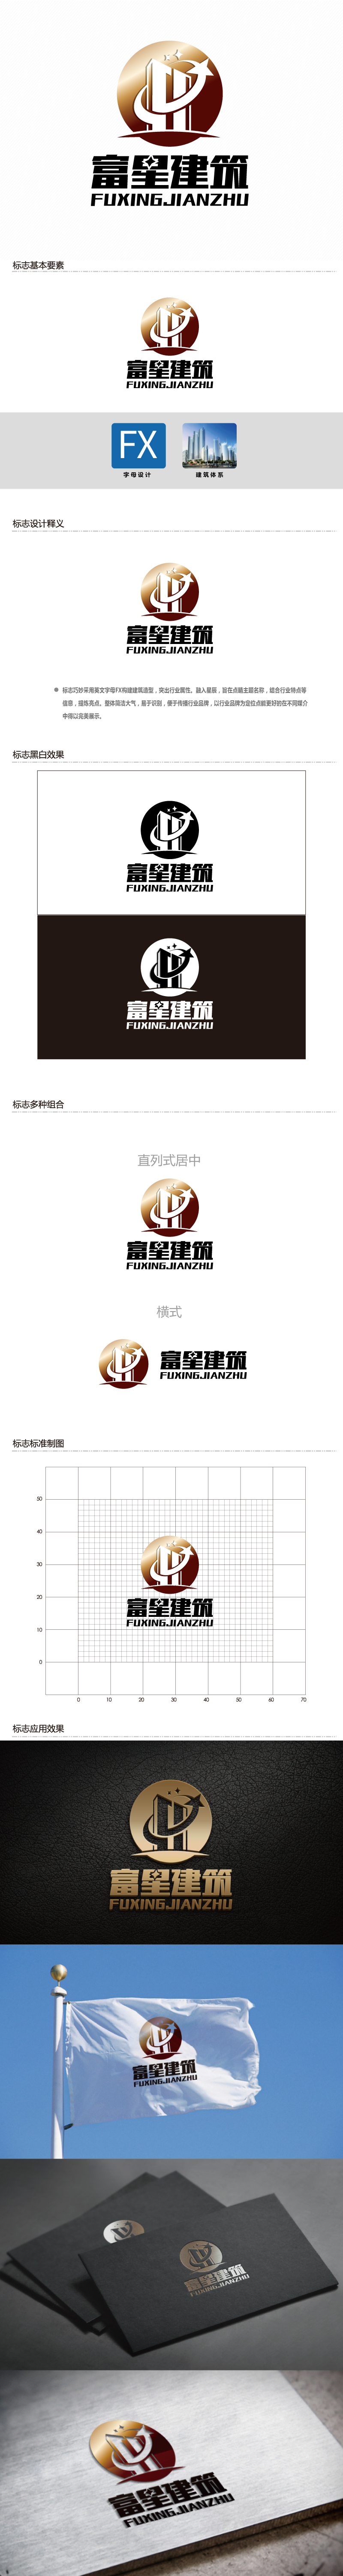 连杰的天津富星建筑工程有限公司logo设计